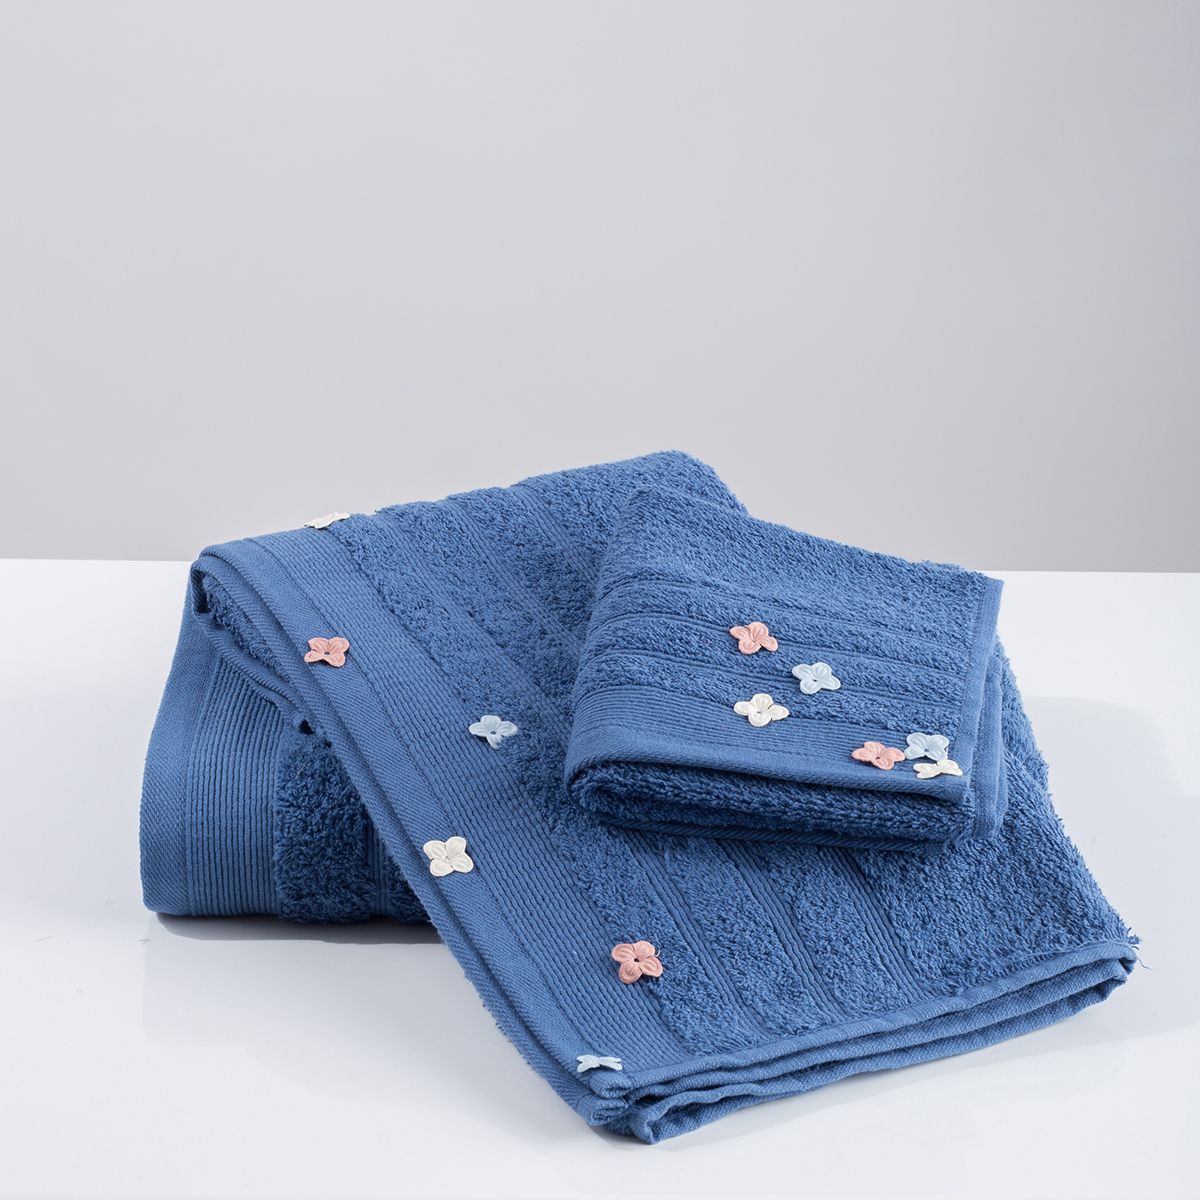 Πετσέτες Μπάνιου (Σετ 3τμχ) White Fabric Flowers Applique Blue 500gsm 213665